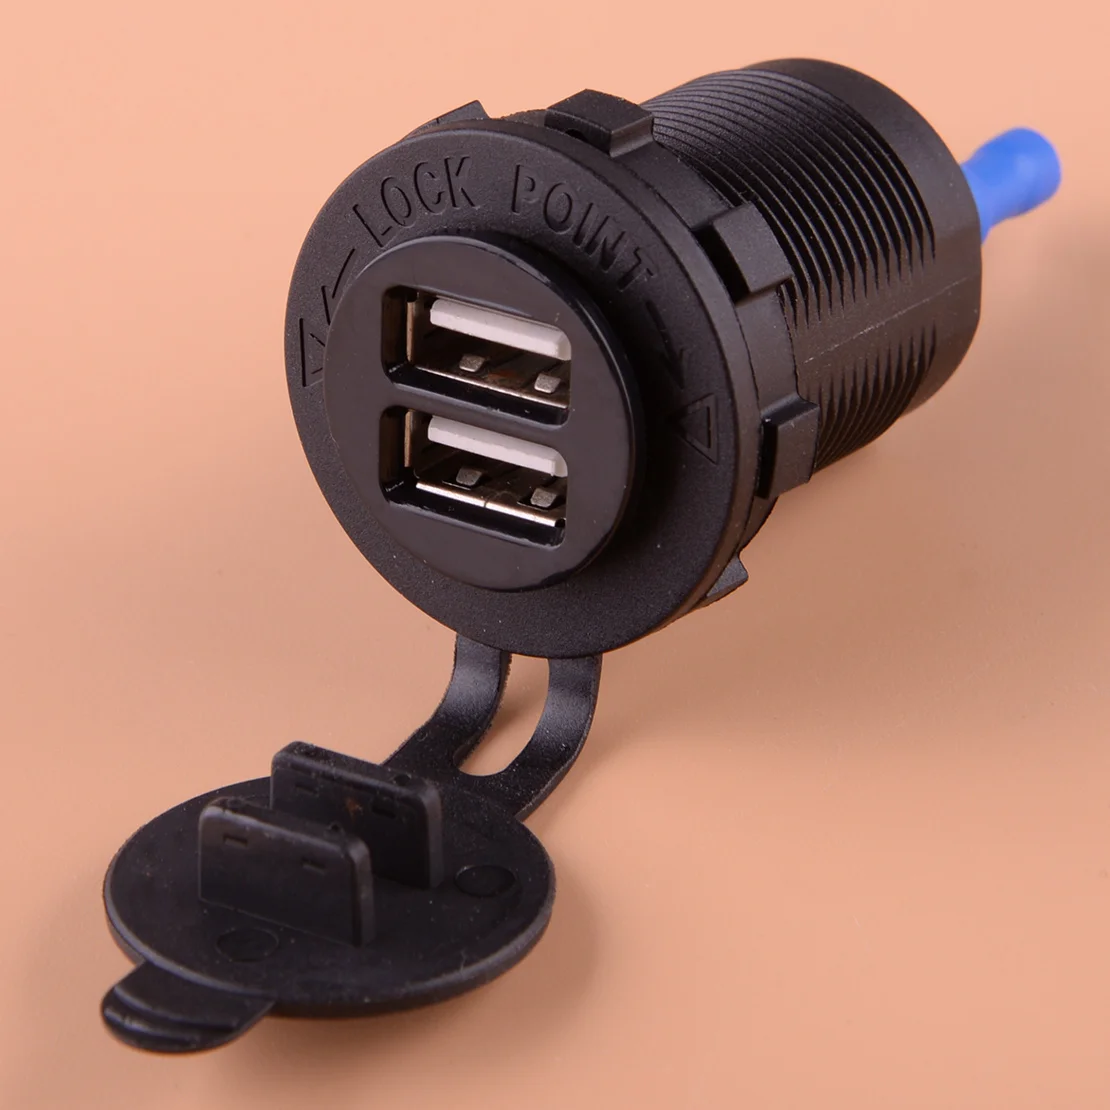 

Универсальное зарядное устройство с двумя USB-портами, черный цвет, адаптер питания для мотоцикла, квадроцикла, домов на колесах, внедорожника, лодки, 12 В, 2,1 А